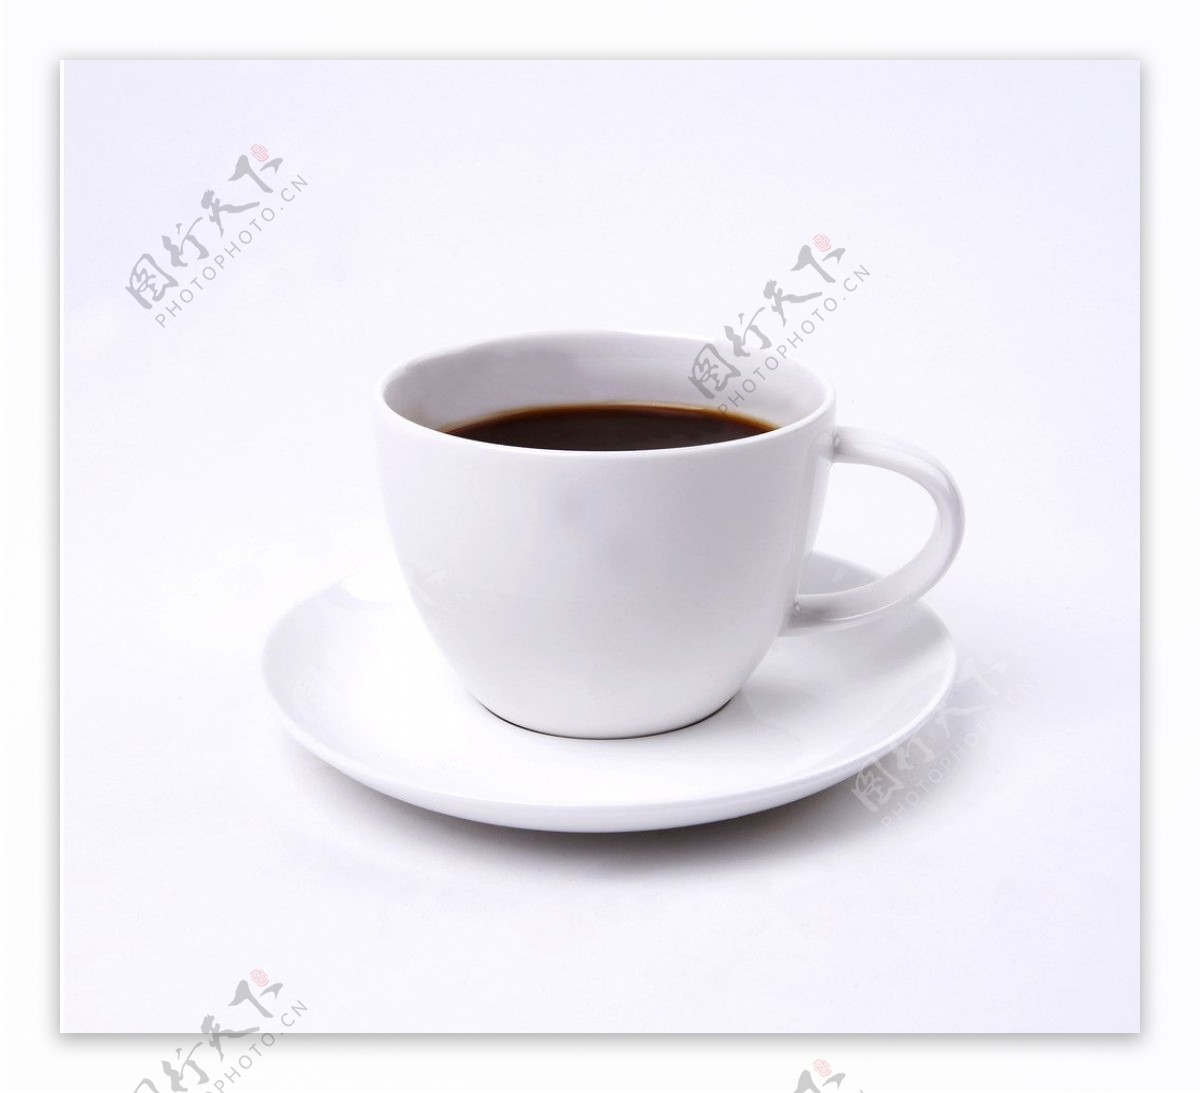 咖啡泡咖啡图片